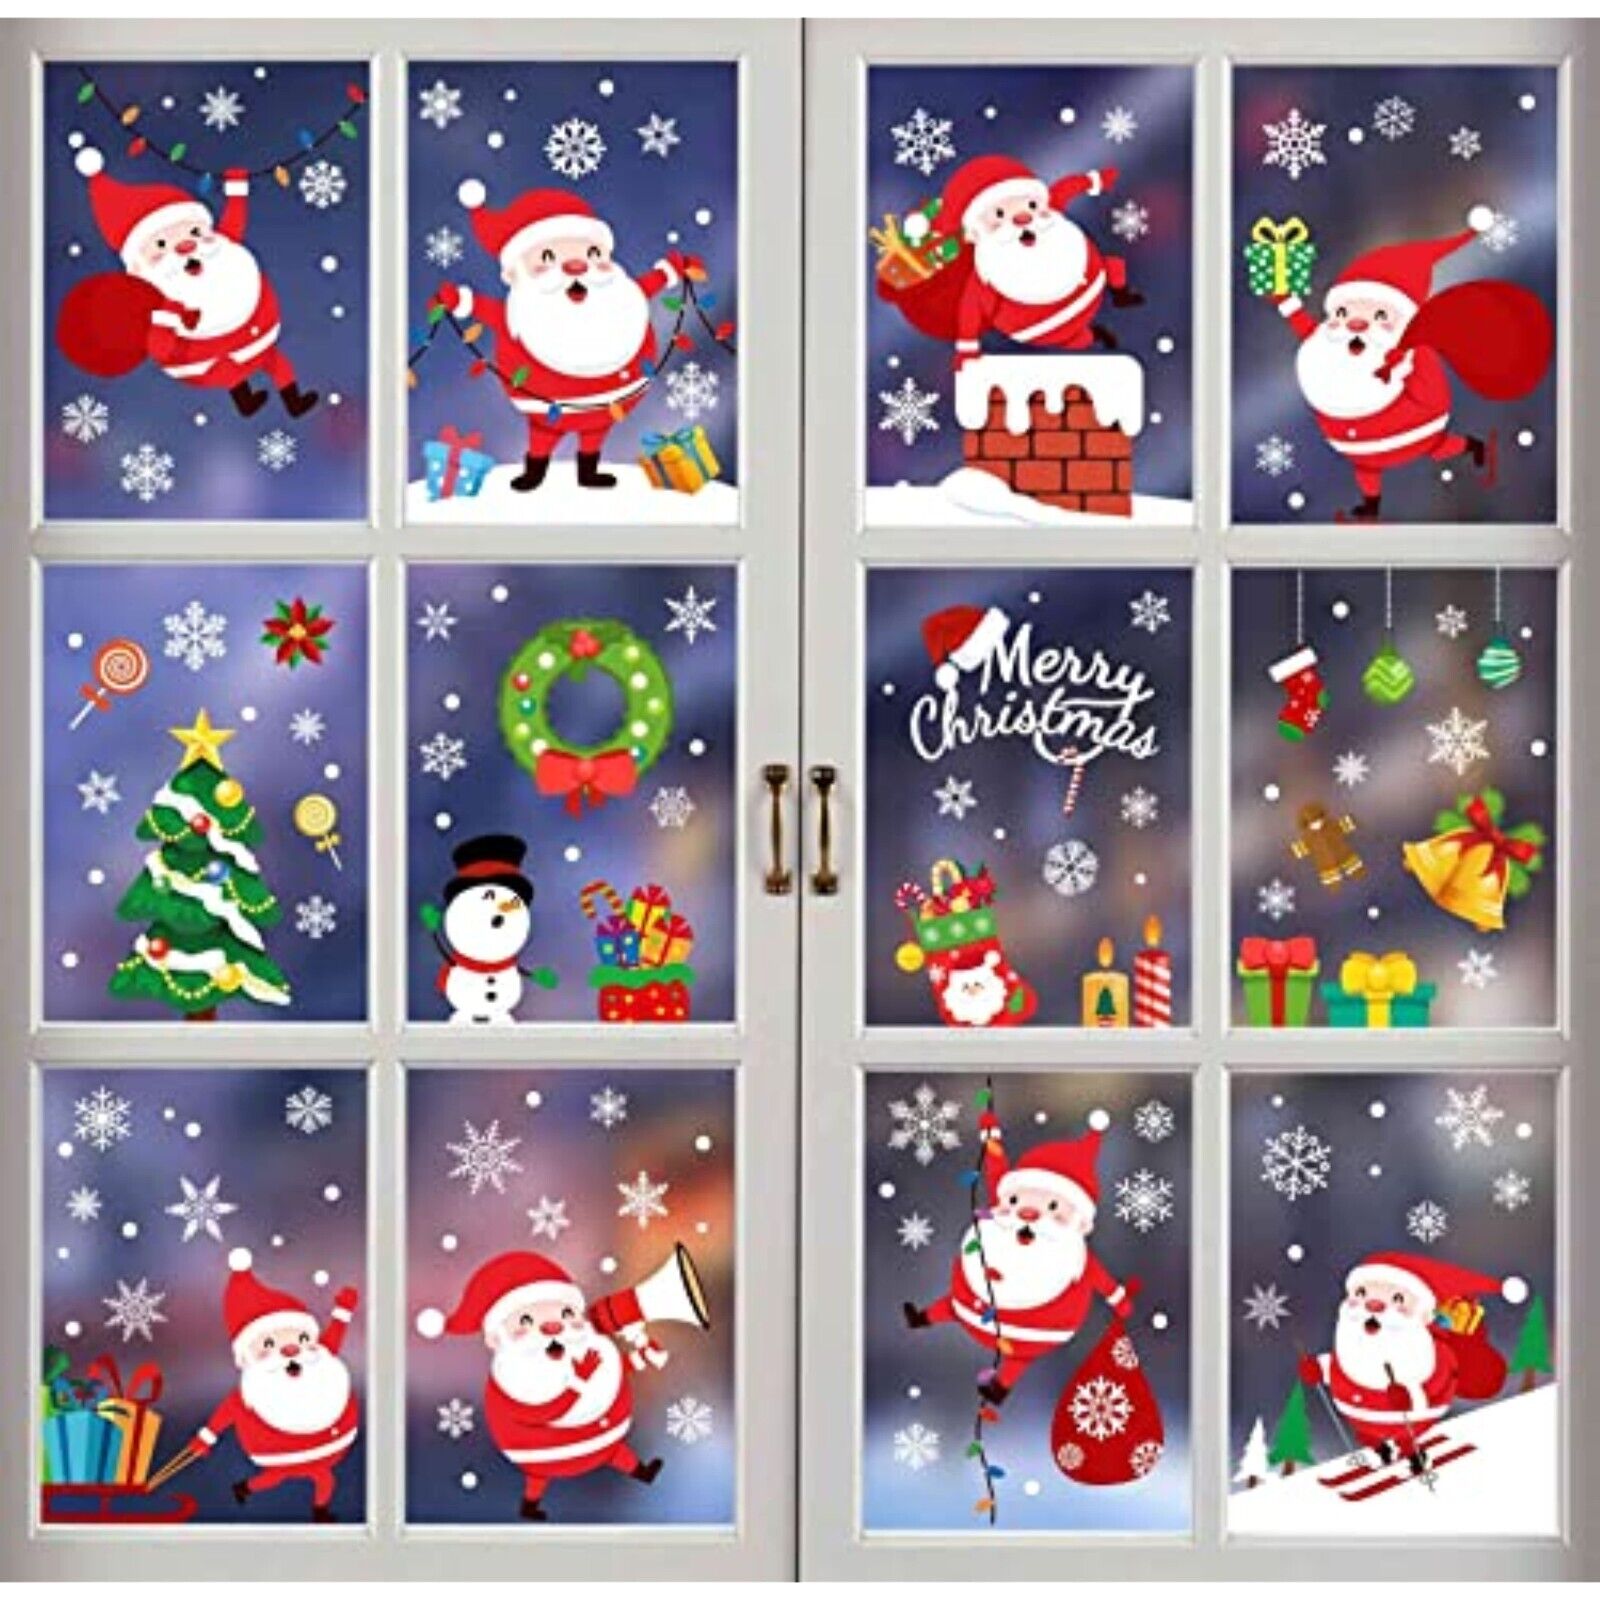 NEU 178 Cartoon Fensterfolie, Fensterdeko Fensterbild Weihnachten Dekoration